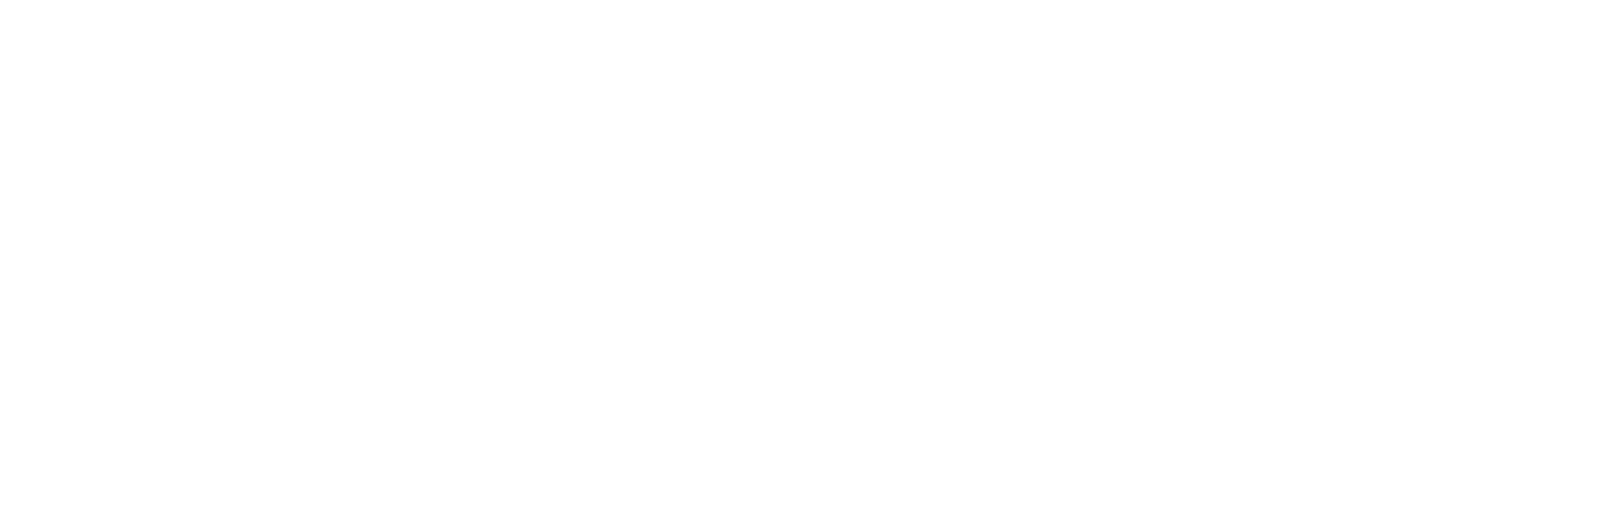 JPMorgan Asset Management logo grand pour les fonds sombres (PNG transparent)